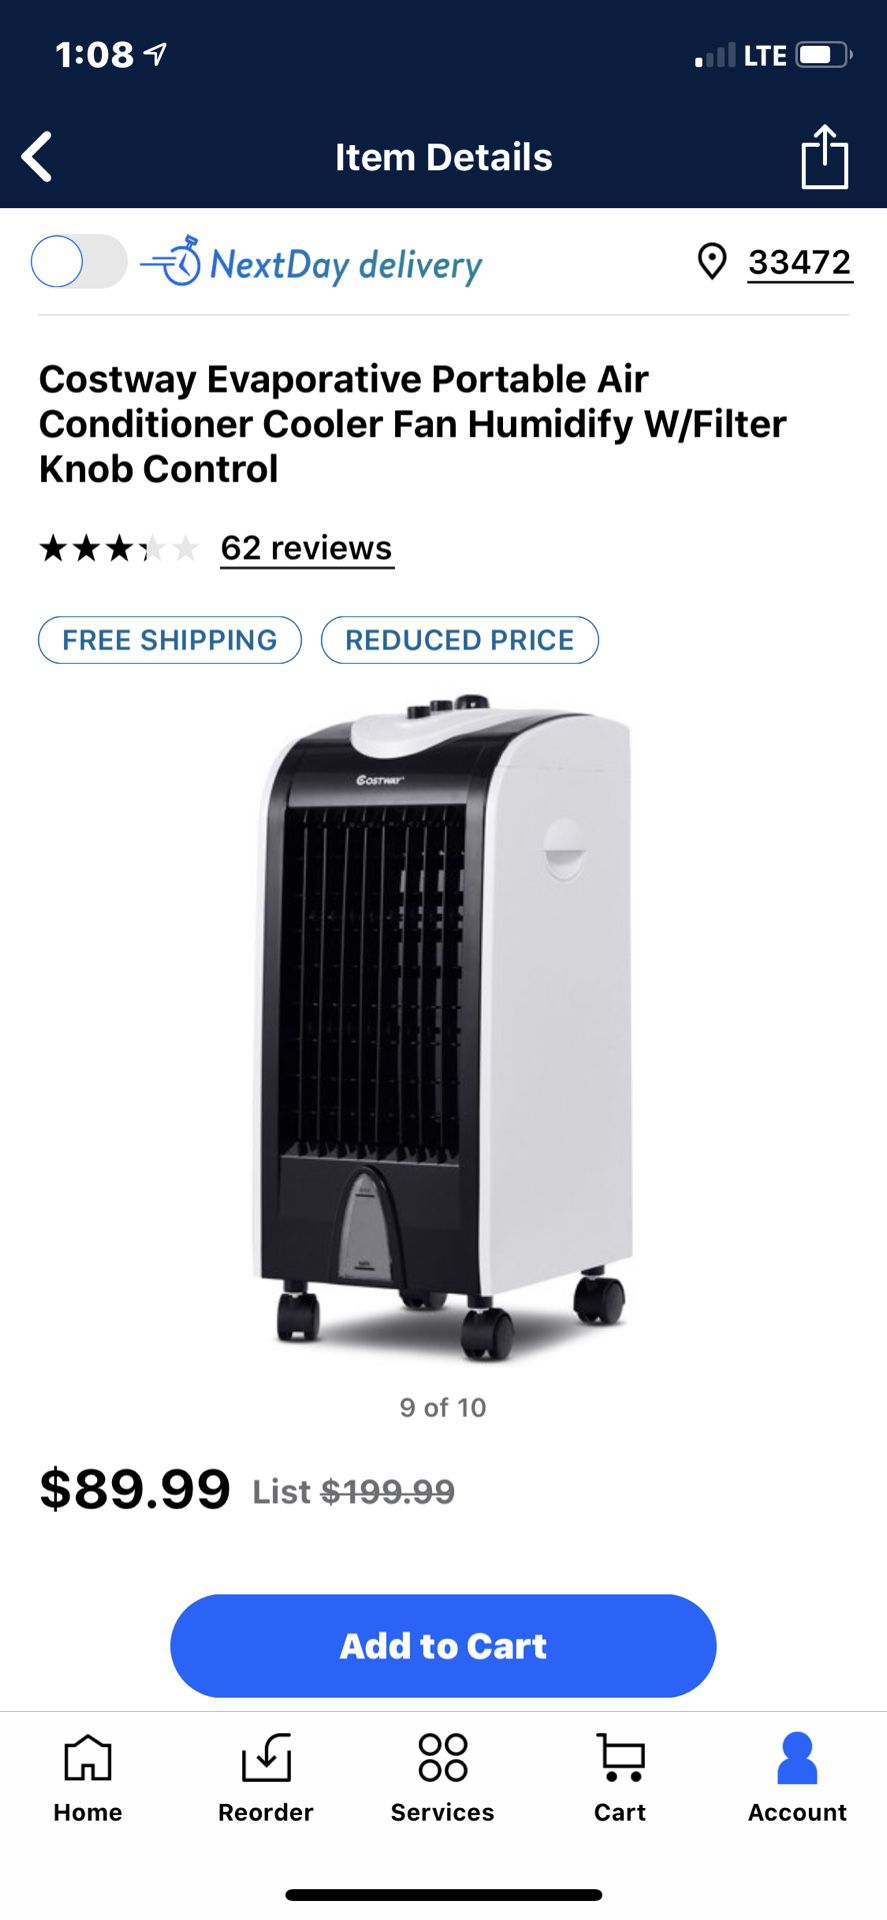 Costway evaporative portable air conditioner